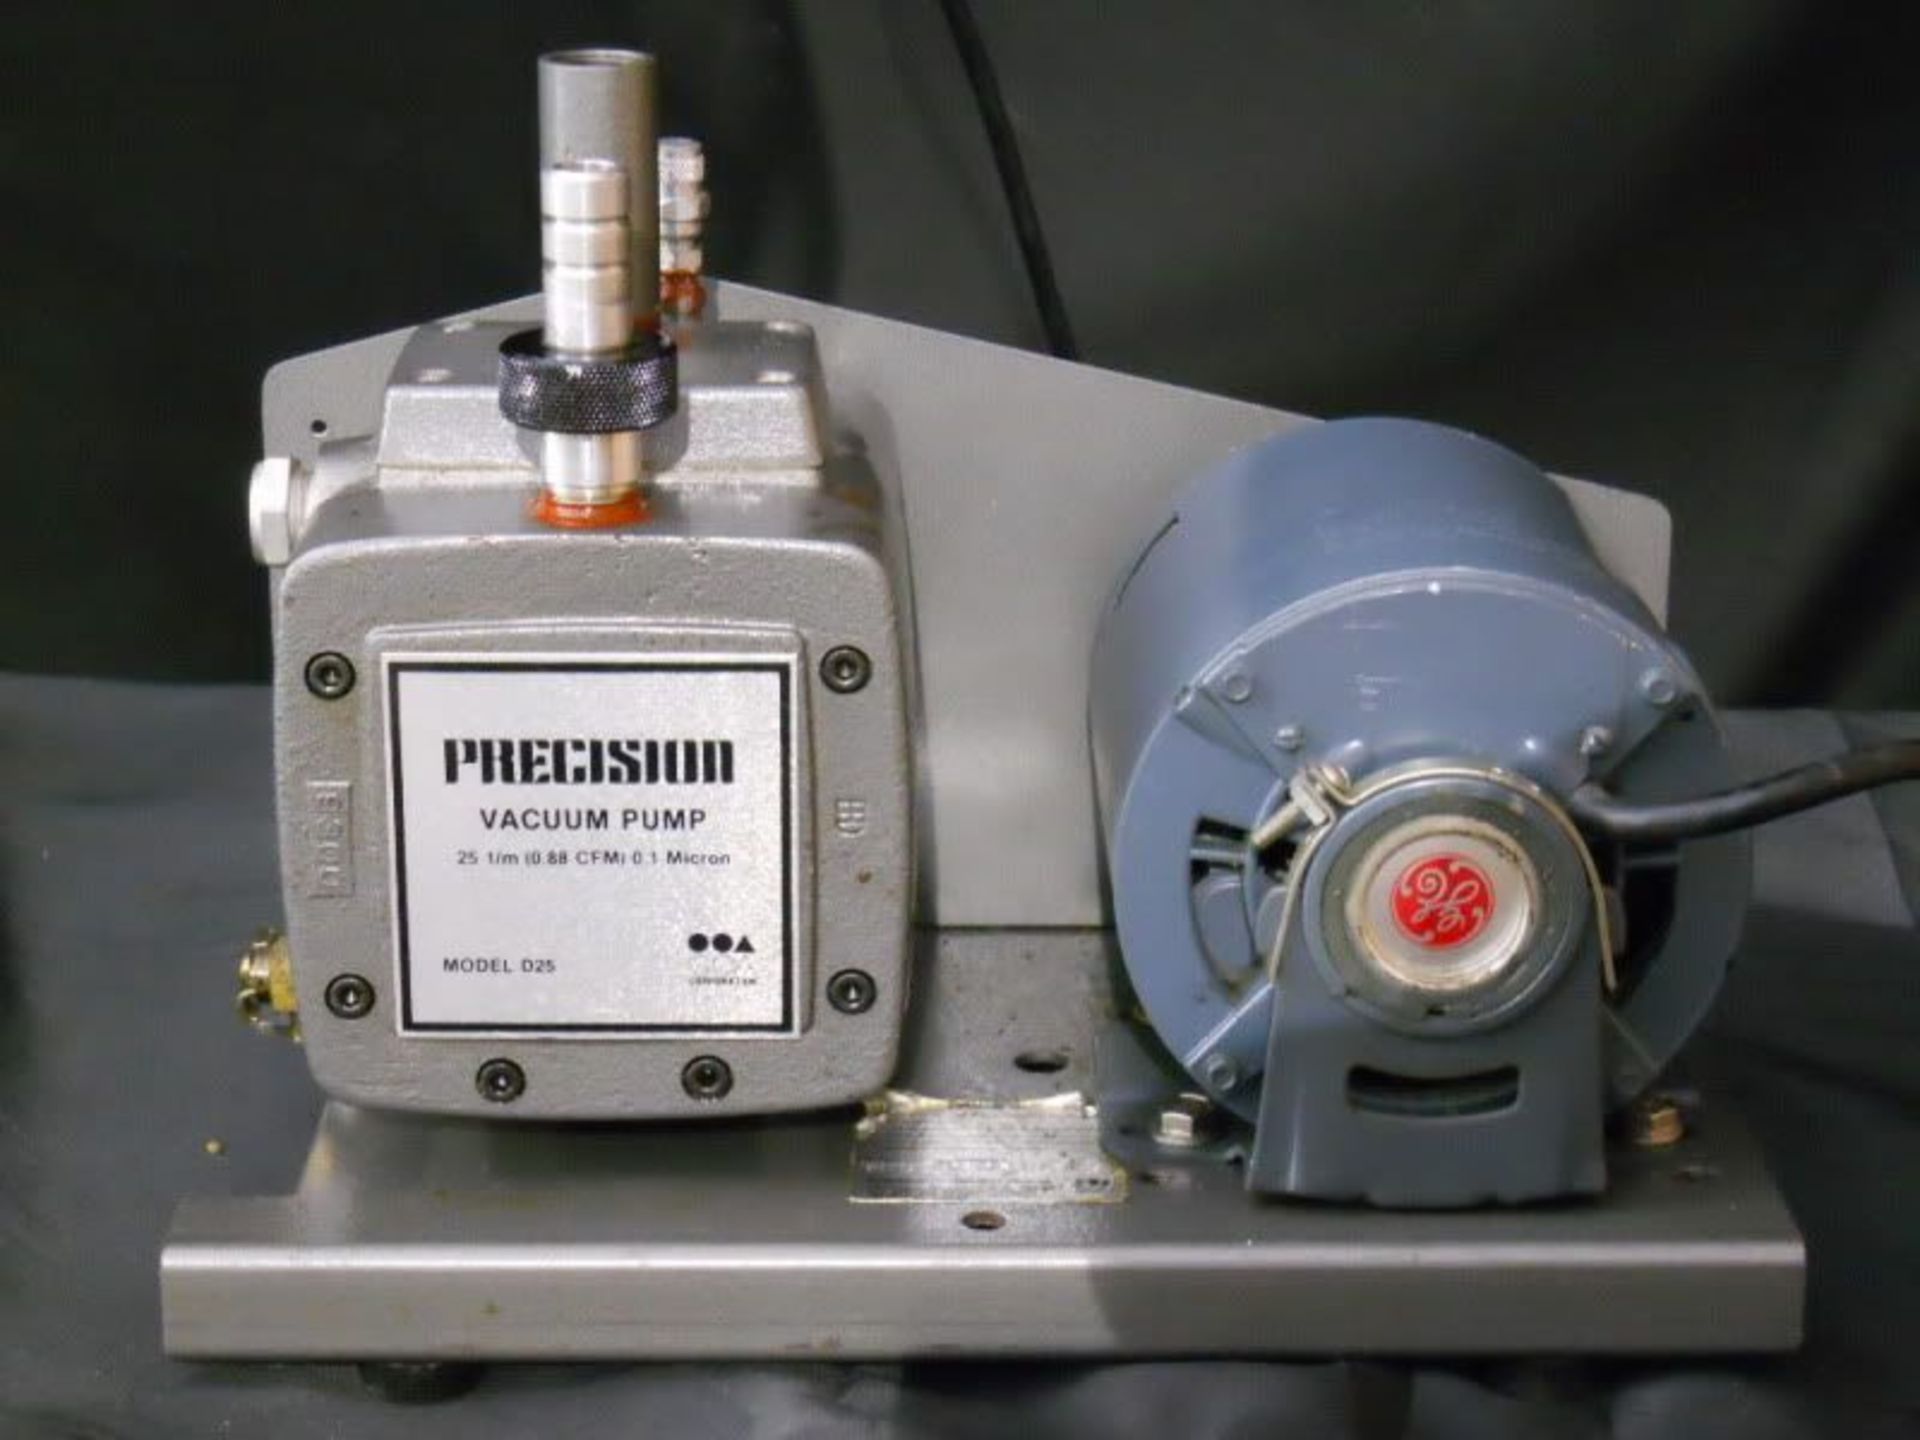 Precision Vacuum Pump Model D25, Qty 1, 330783248901